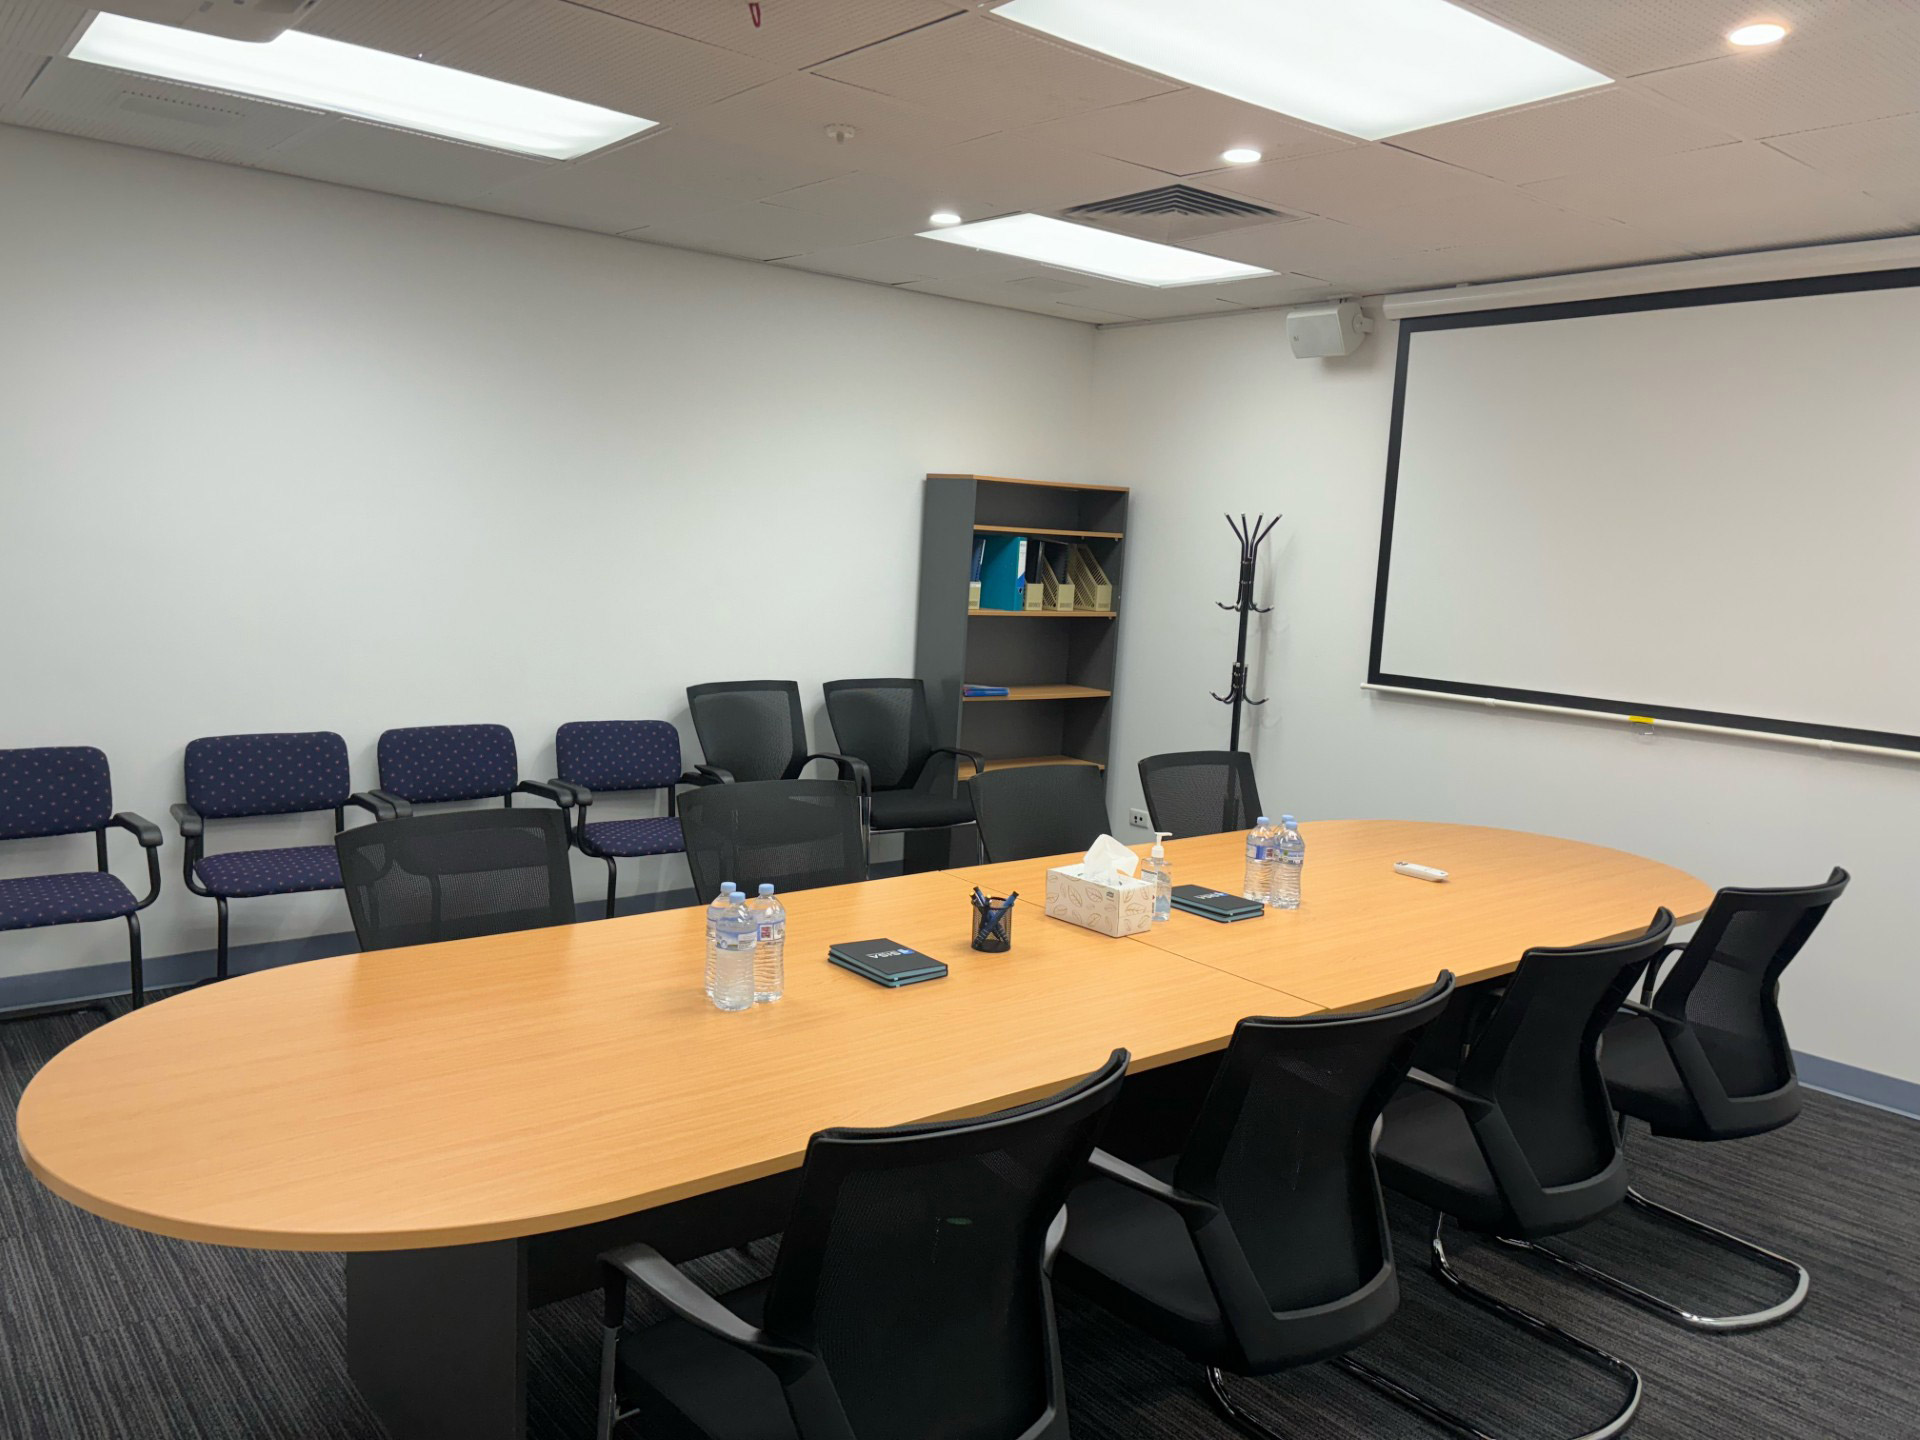 SISA Meeting Room - Seats 8 people